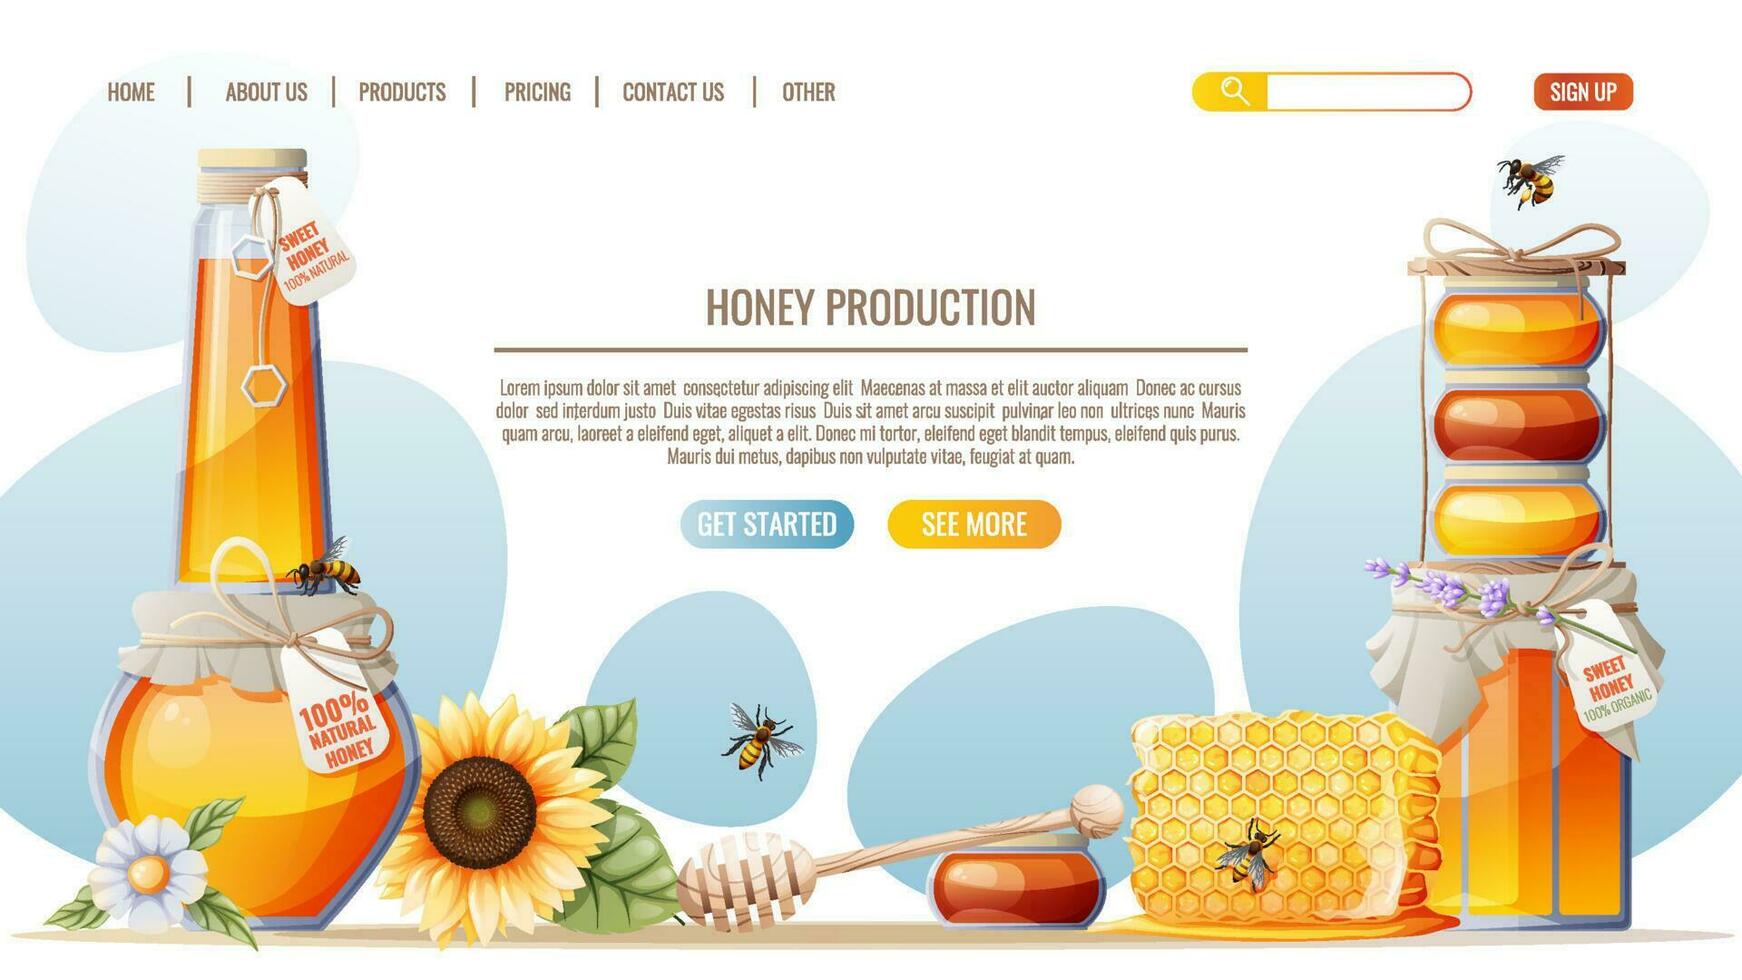 productos de miel panales, tarro de miel, abejas. plantilla de diseño de página web de tienda de miel. ilustración vectorial para banner, publicidad, página web, portada vector